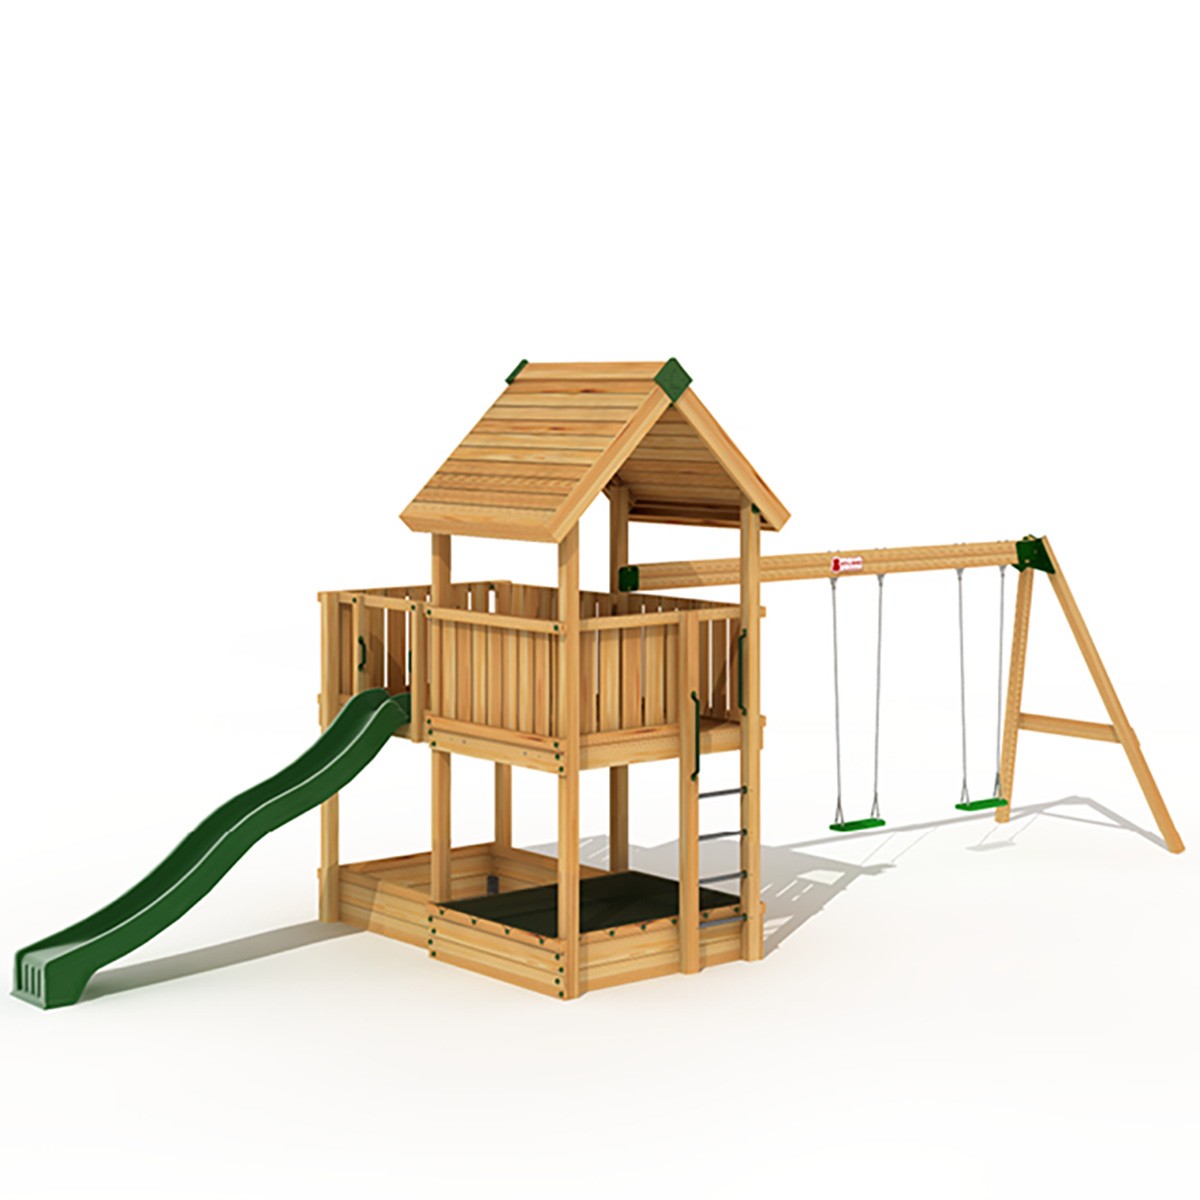 Ξύλινη παιδική χαρά | Project 3S Project 3S με Κούνια Προέκταση 2 θέσεων - Παιδική Χαρά Επαγγελματικής Χρήσης 5502710